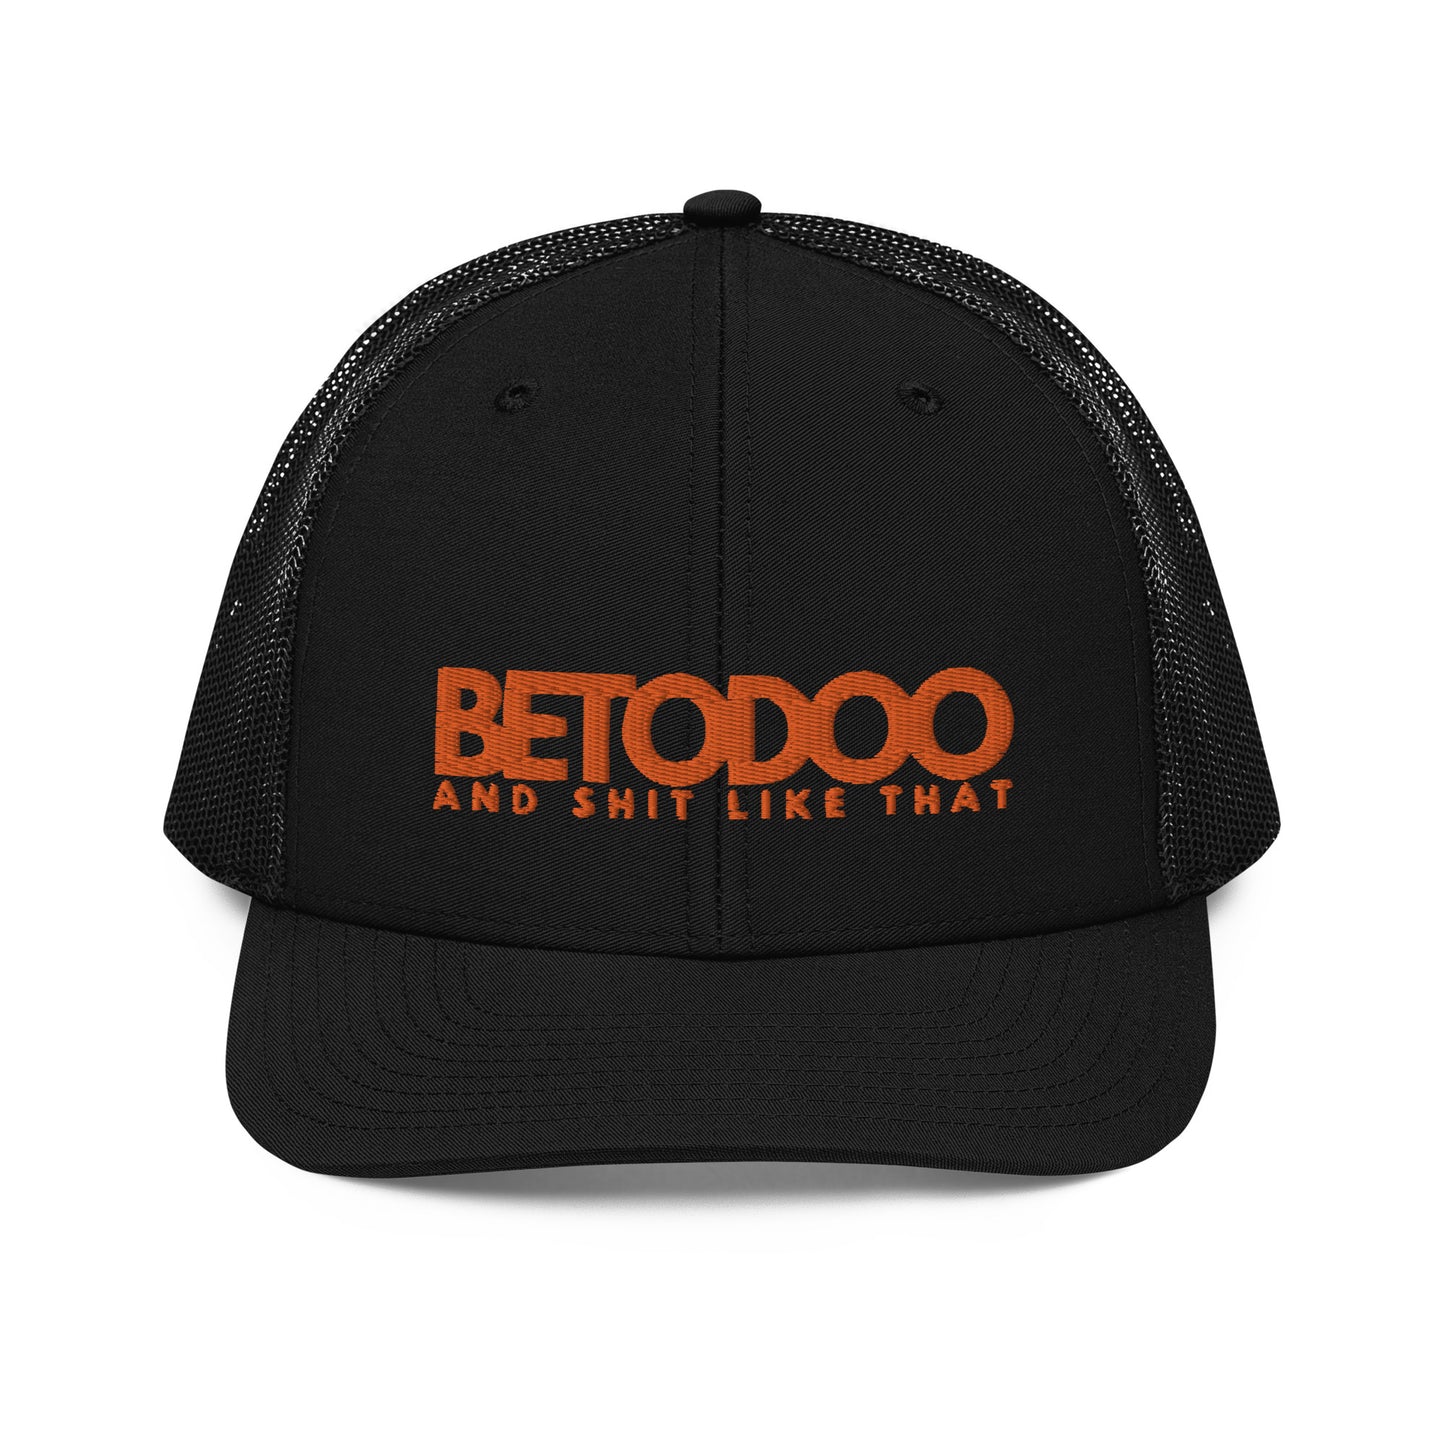 BETODOO AMY B Trucker Cap